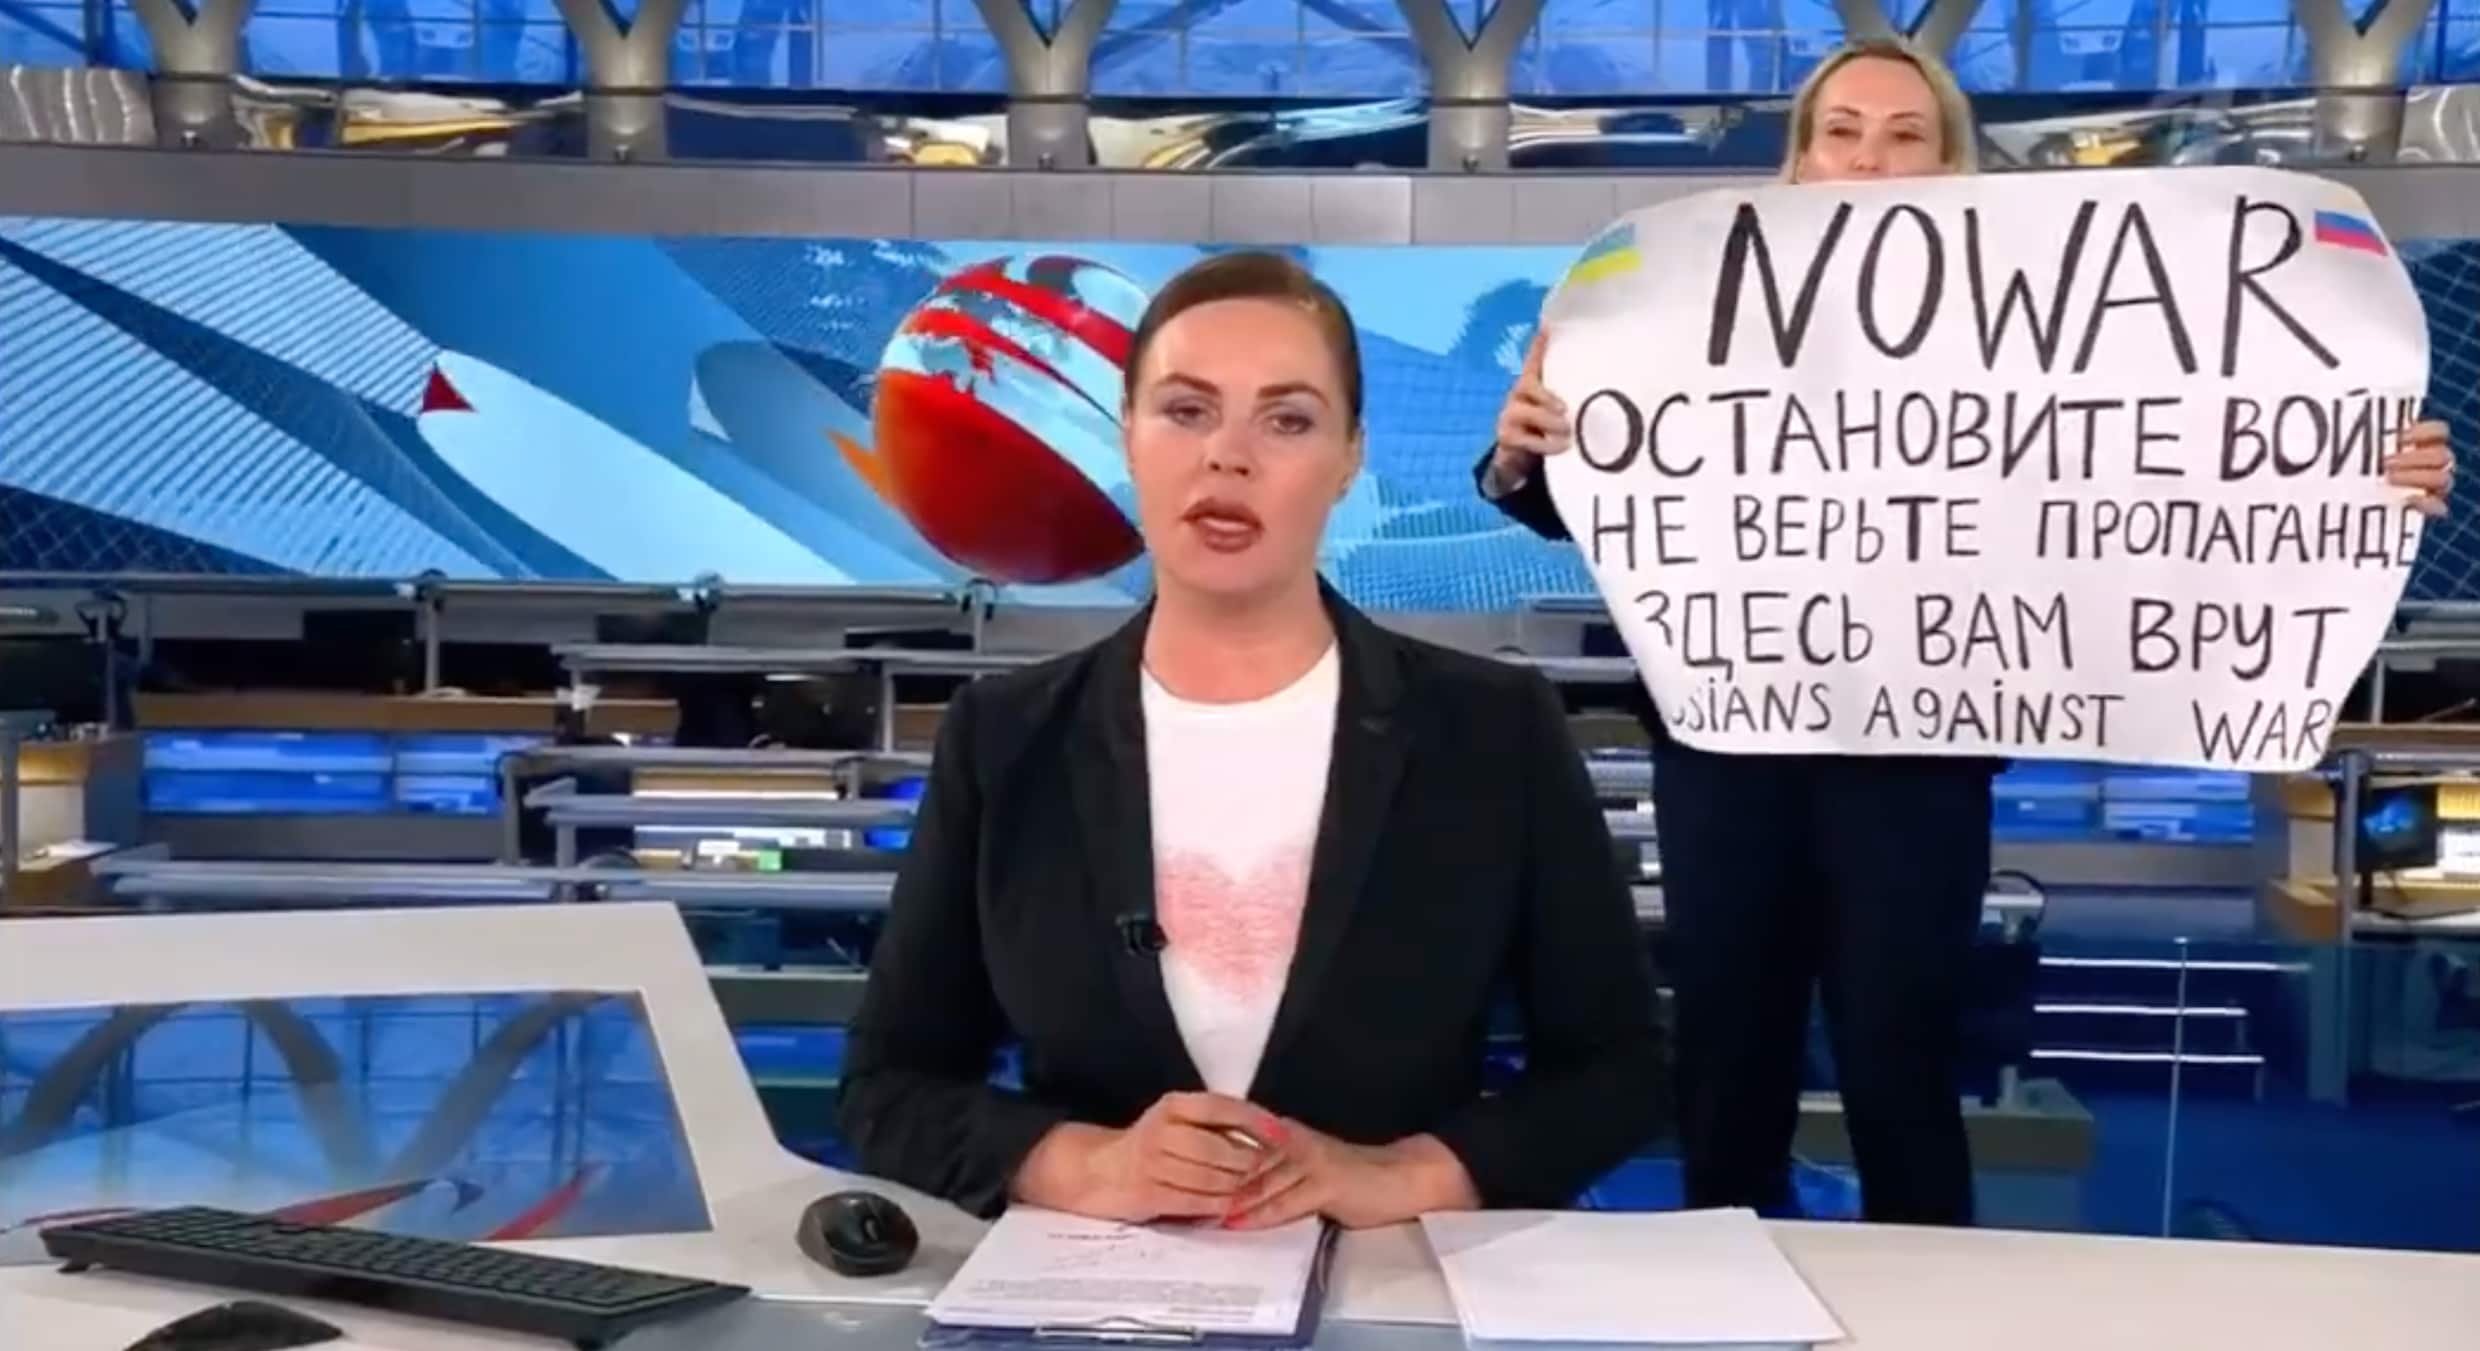 ▶ ‘Ze liegen tegen jullie’: redactielid protesteert tegen oorlog op Russische staatstelevisie